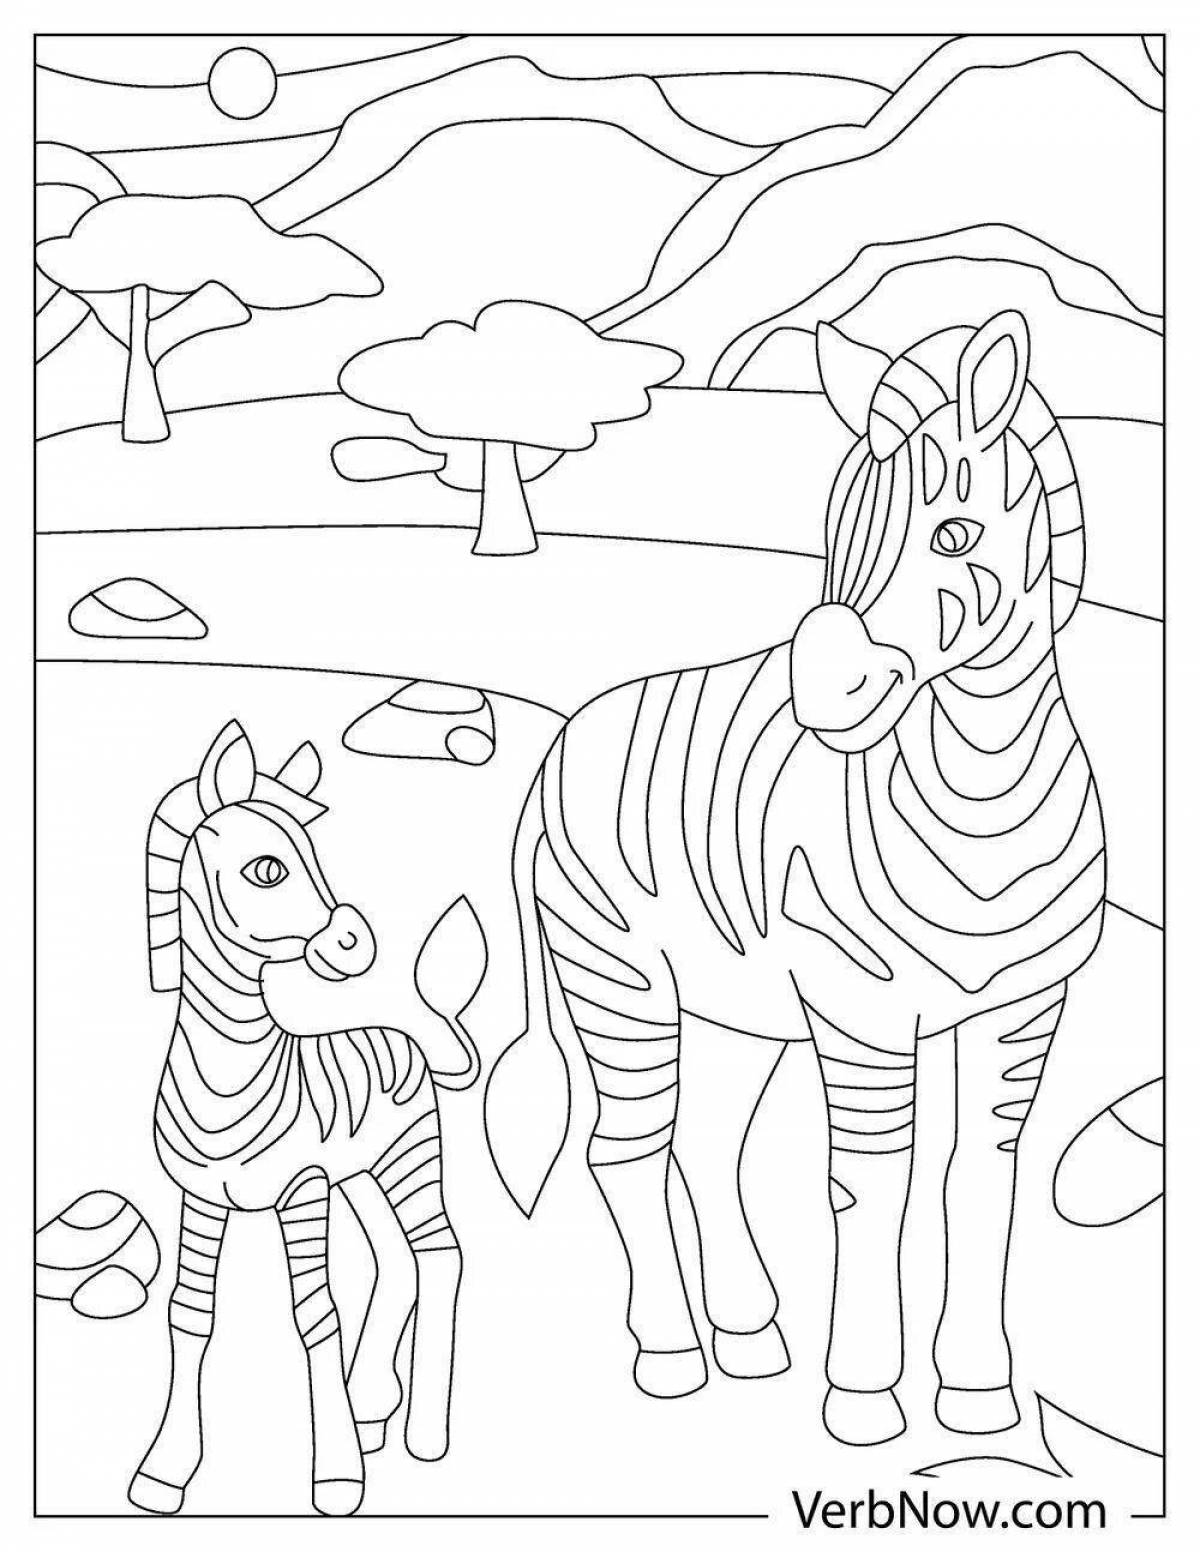 Великолепная раскраска зебра для малышей 3-4 лет